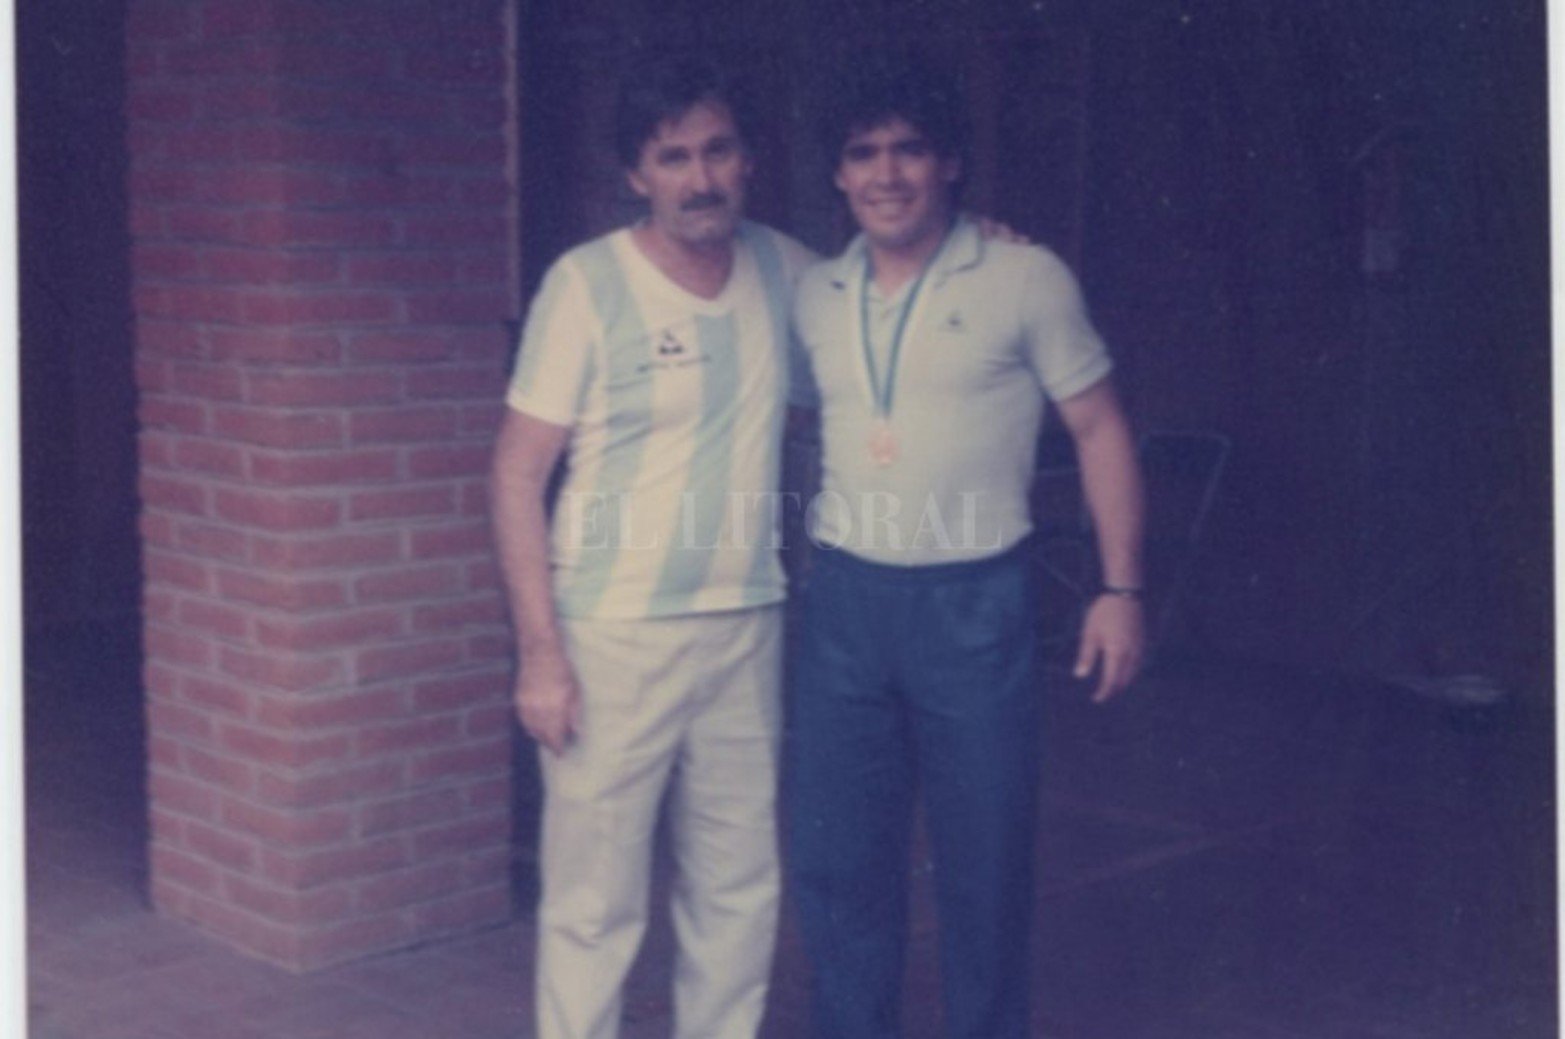 Diego Maradona y la medalla de campeón del mundo. Un momento glorioso para el que, por entonces, era sin dudas el mejor jugador del mundo.